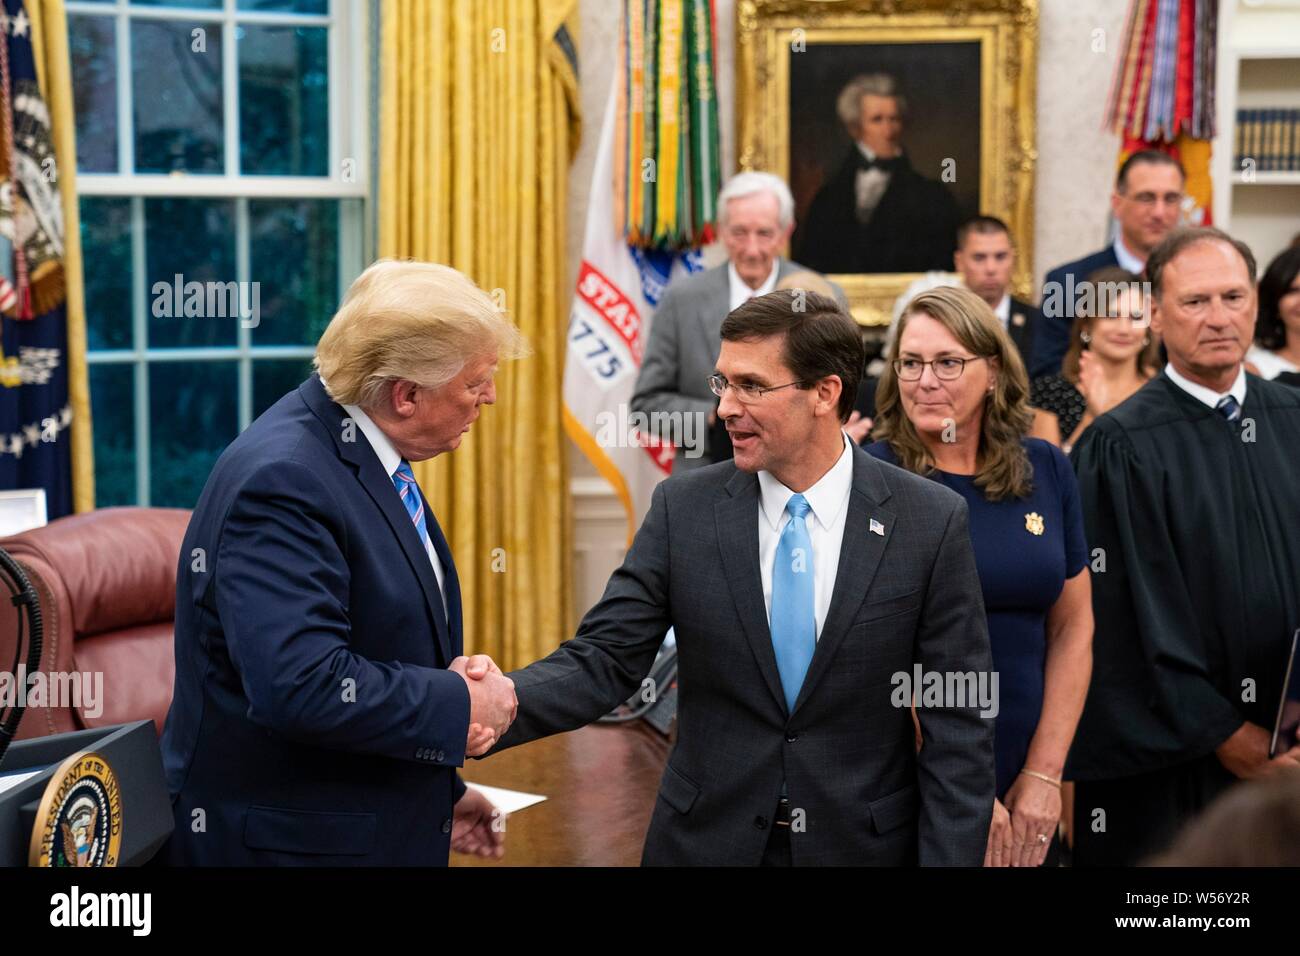 Us-Präsident Donald Trump, Links, beglückwünscht Verteidigungsminister Mark Esper die Vereidigung im Oval Office des Weißen Hauses Juli 23, 2019, Washington, DC. Stockfoto